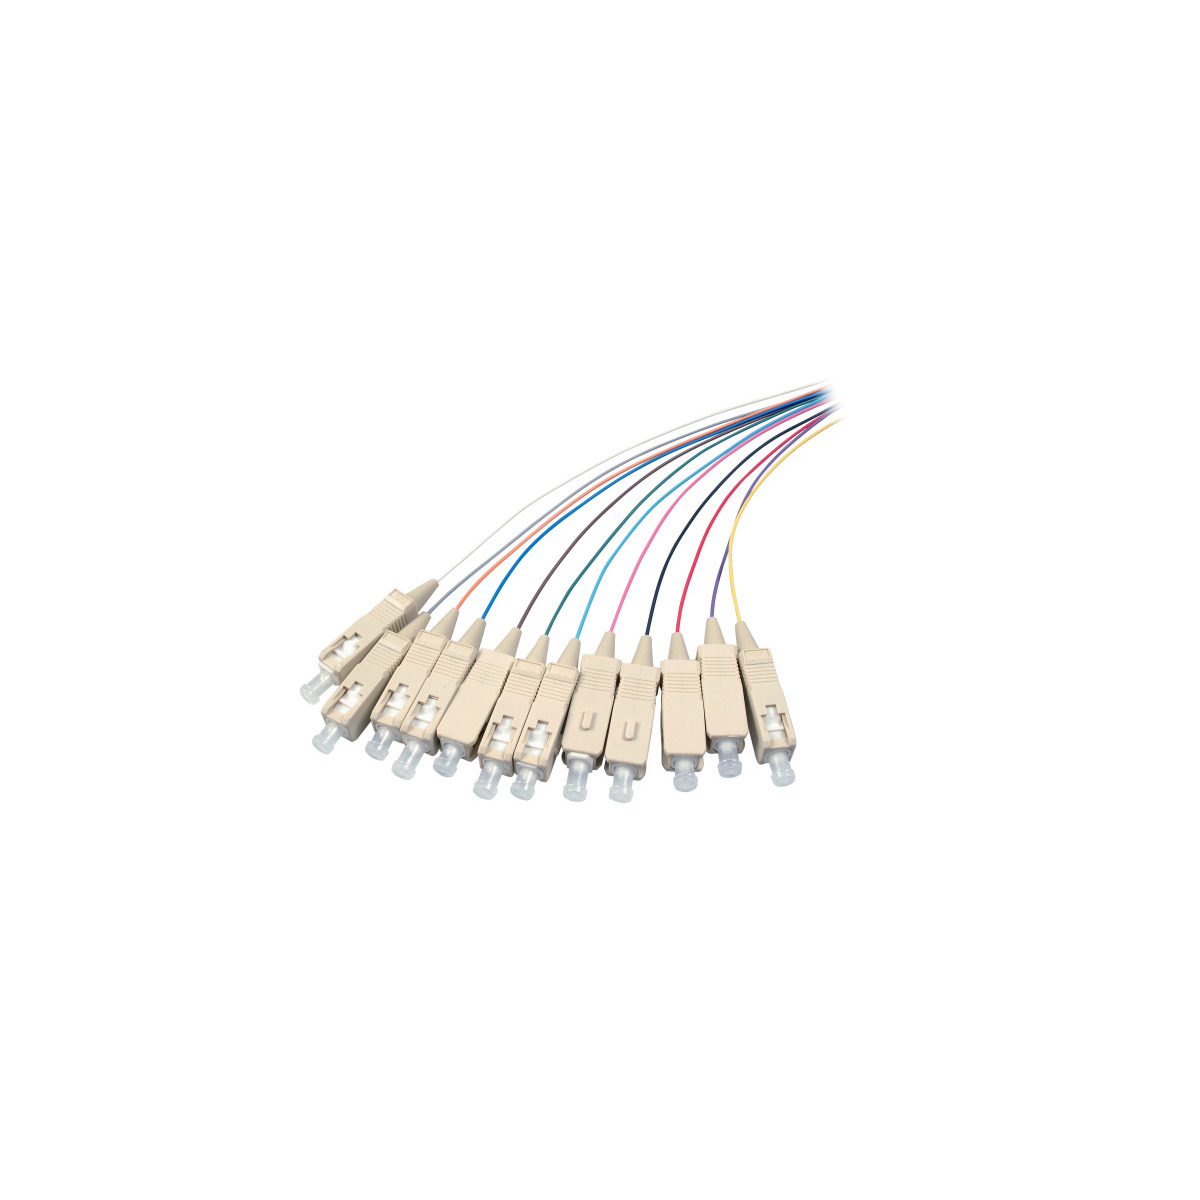 COMMUNIK Kabel Pigtails / SC Glasfaserkabel, m 2 Faserpigtails